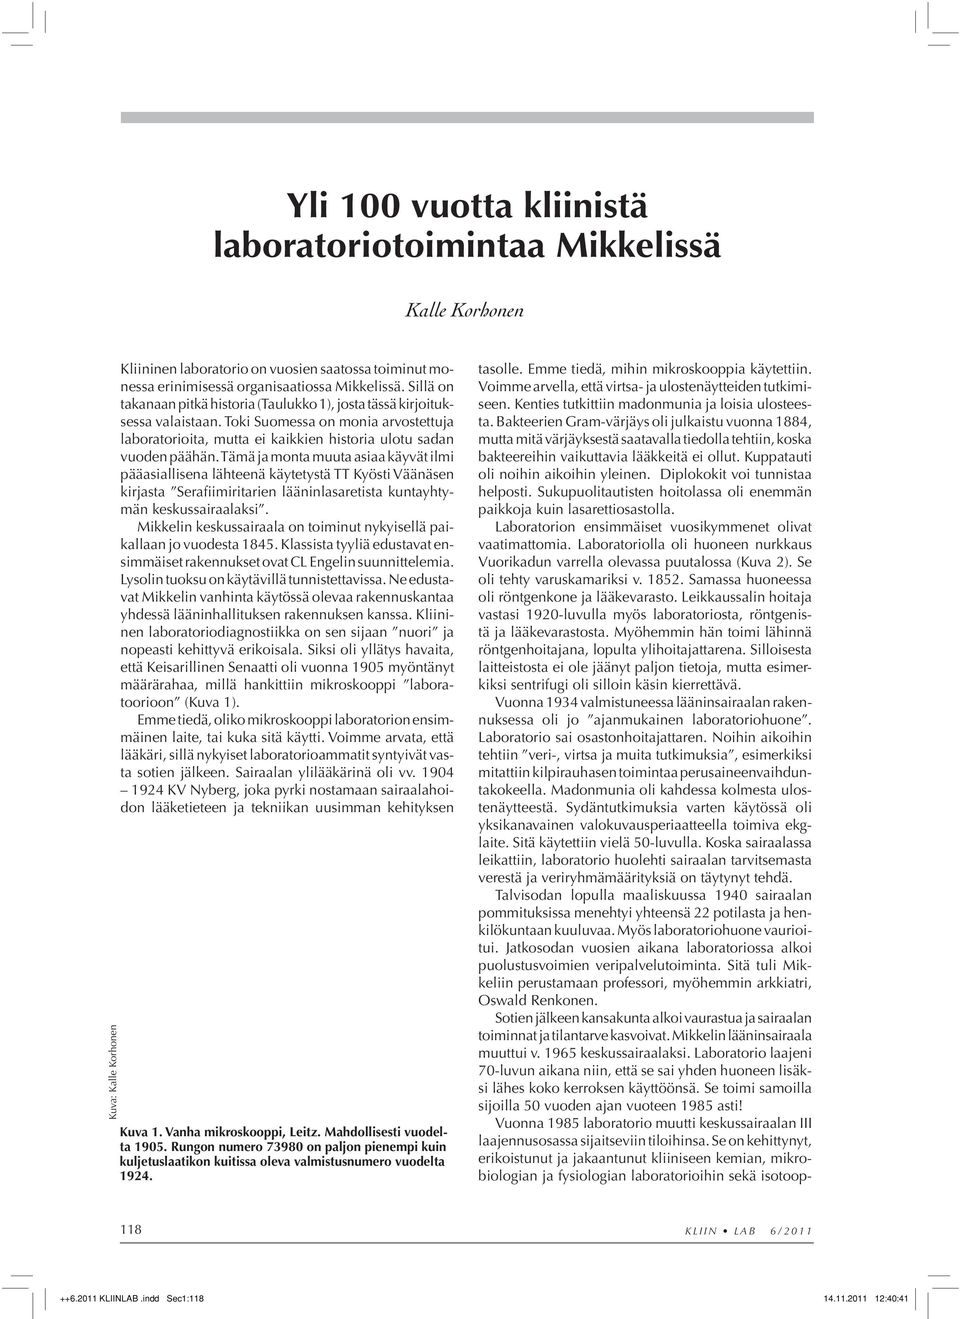 Tämä ja monta muuta asiaa käyvät ilmi pääasiallisena lähteenä käytetystä TT Kyösti Väänäsen kirjasta Serafiimiritarien lääninlasaretista kuntayhtymän keskussairaalaksi.